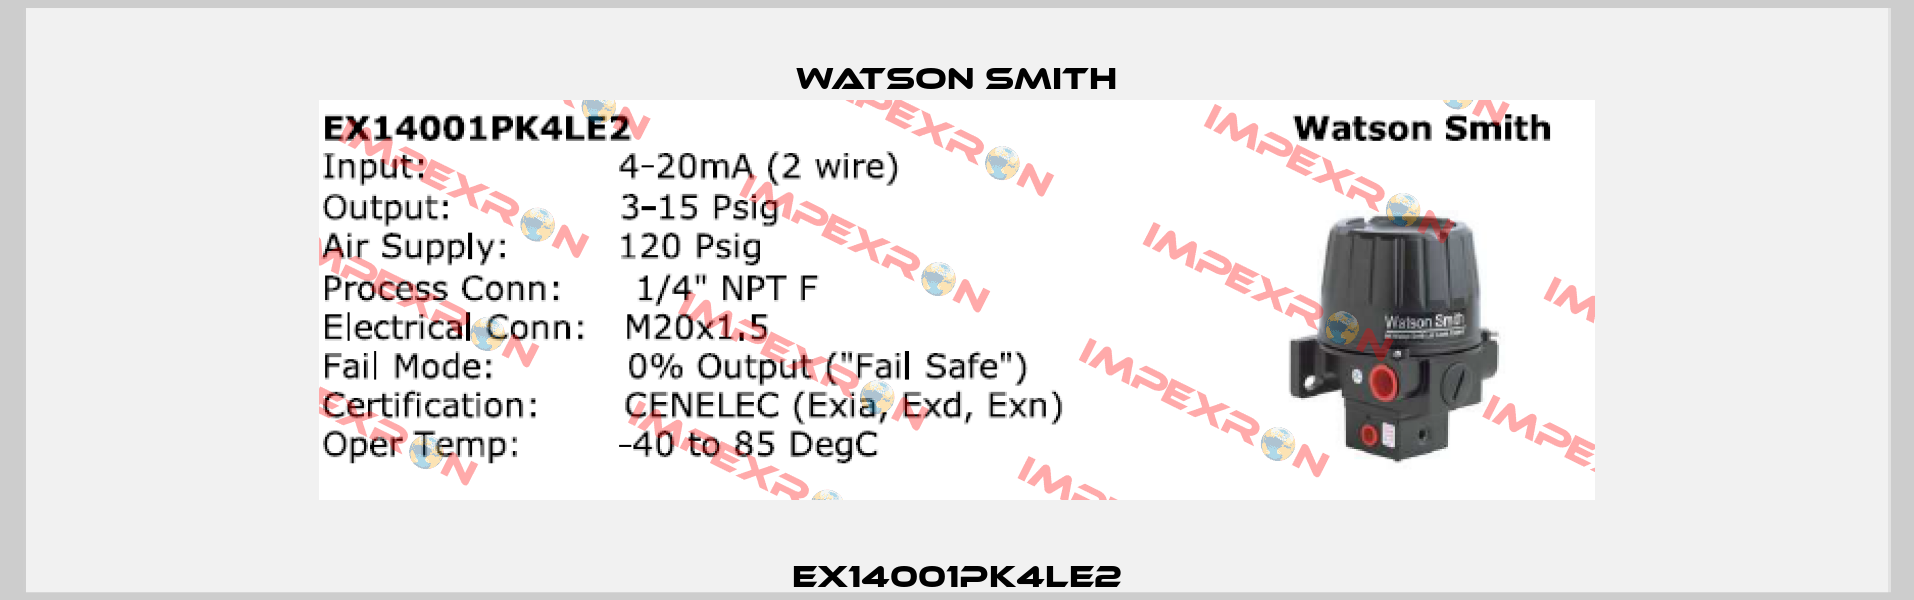 EX14001PK4LE2 Watson Smith